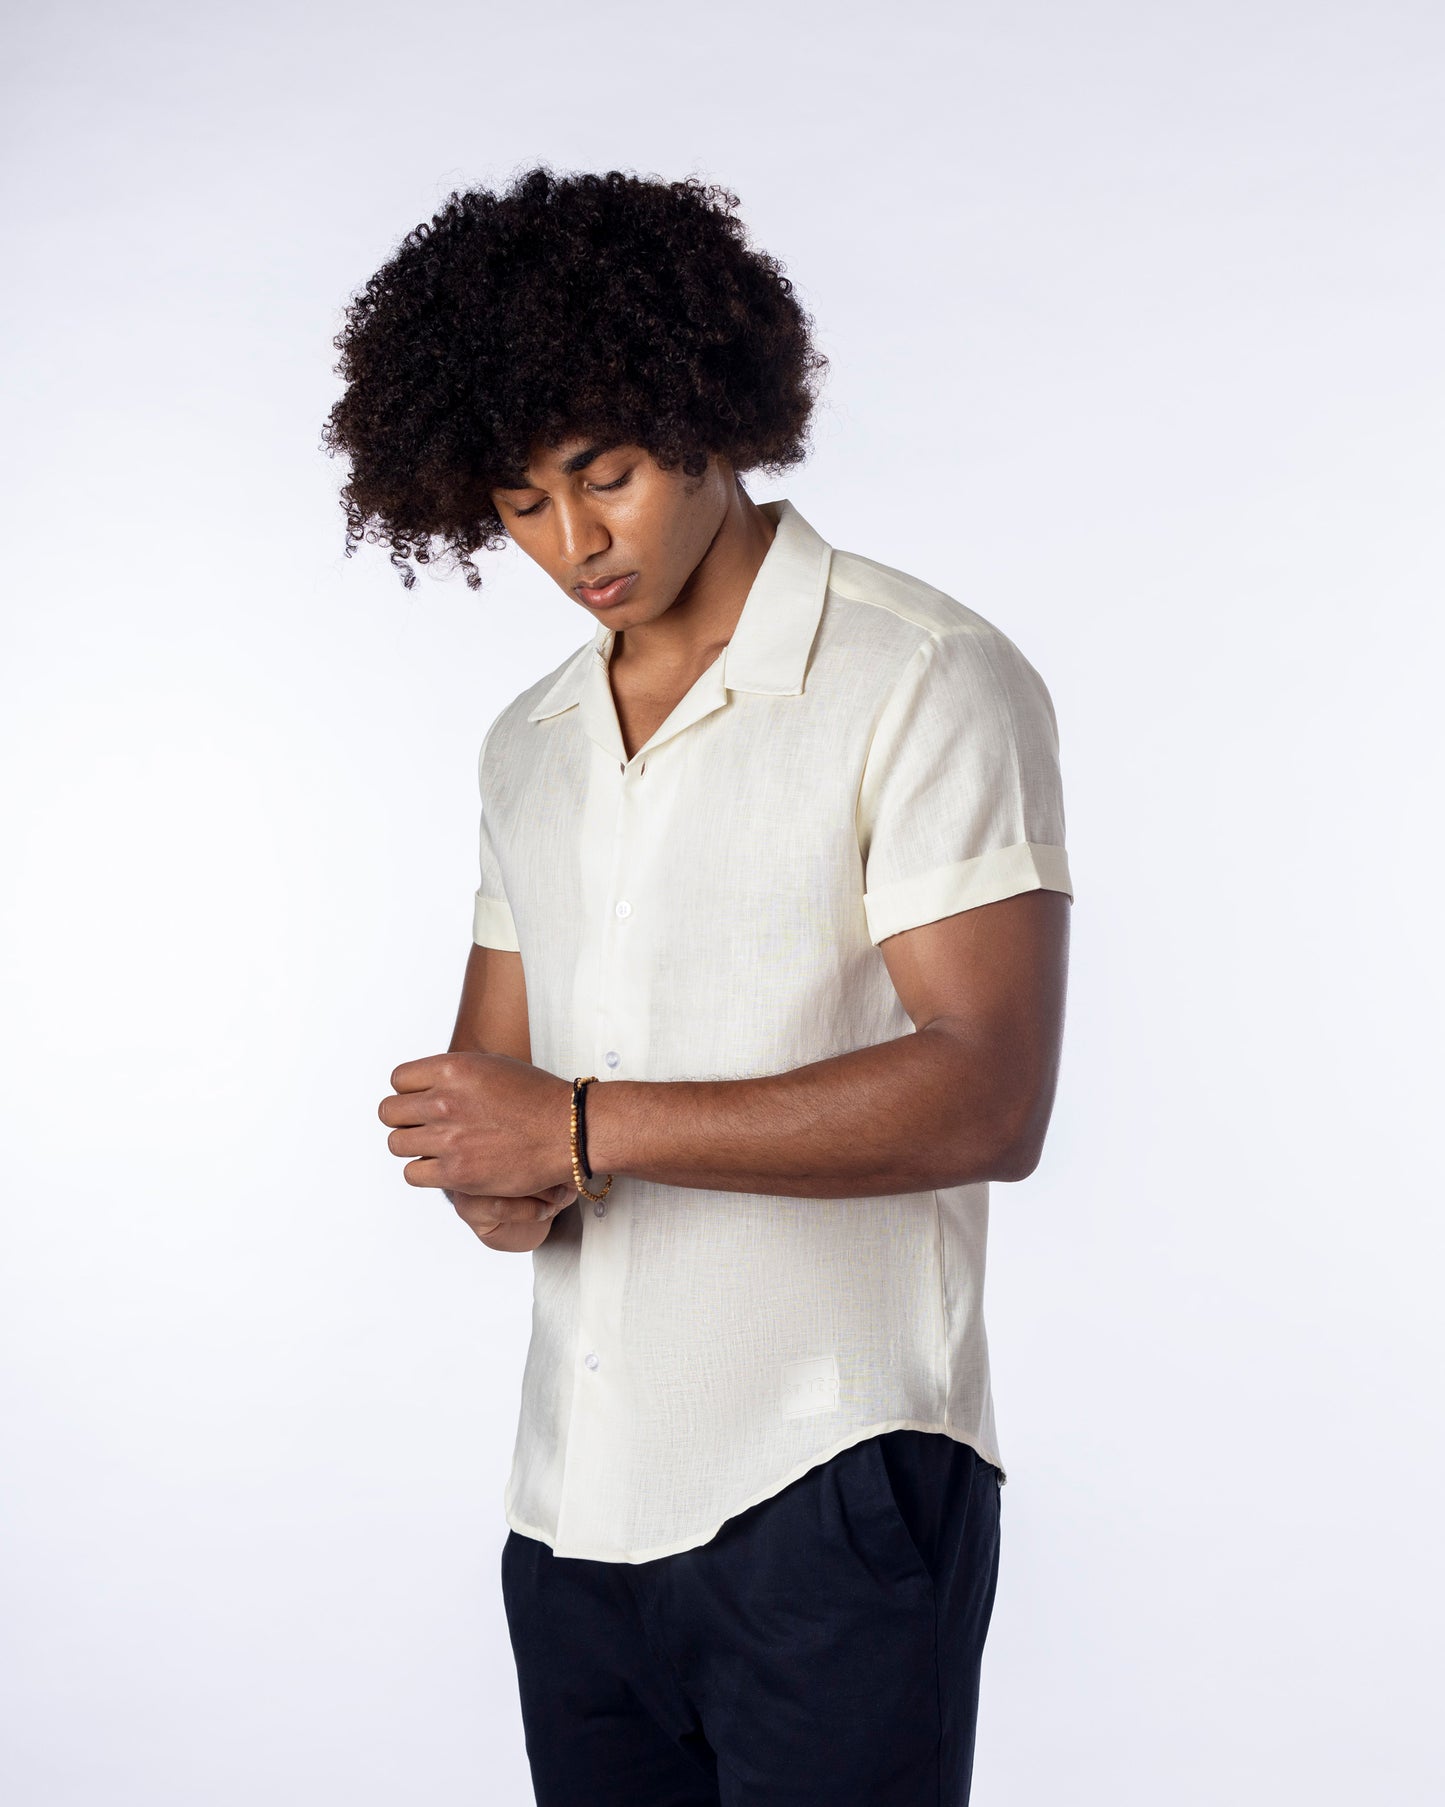 lemon linen Short Sleeve Linen Shirt for Men layback collar shirt party shirt bowling shirt